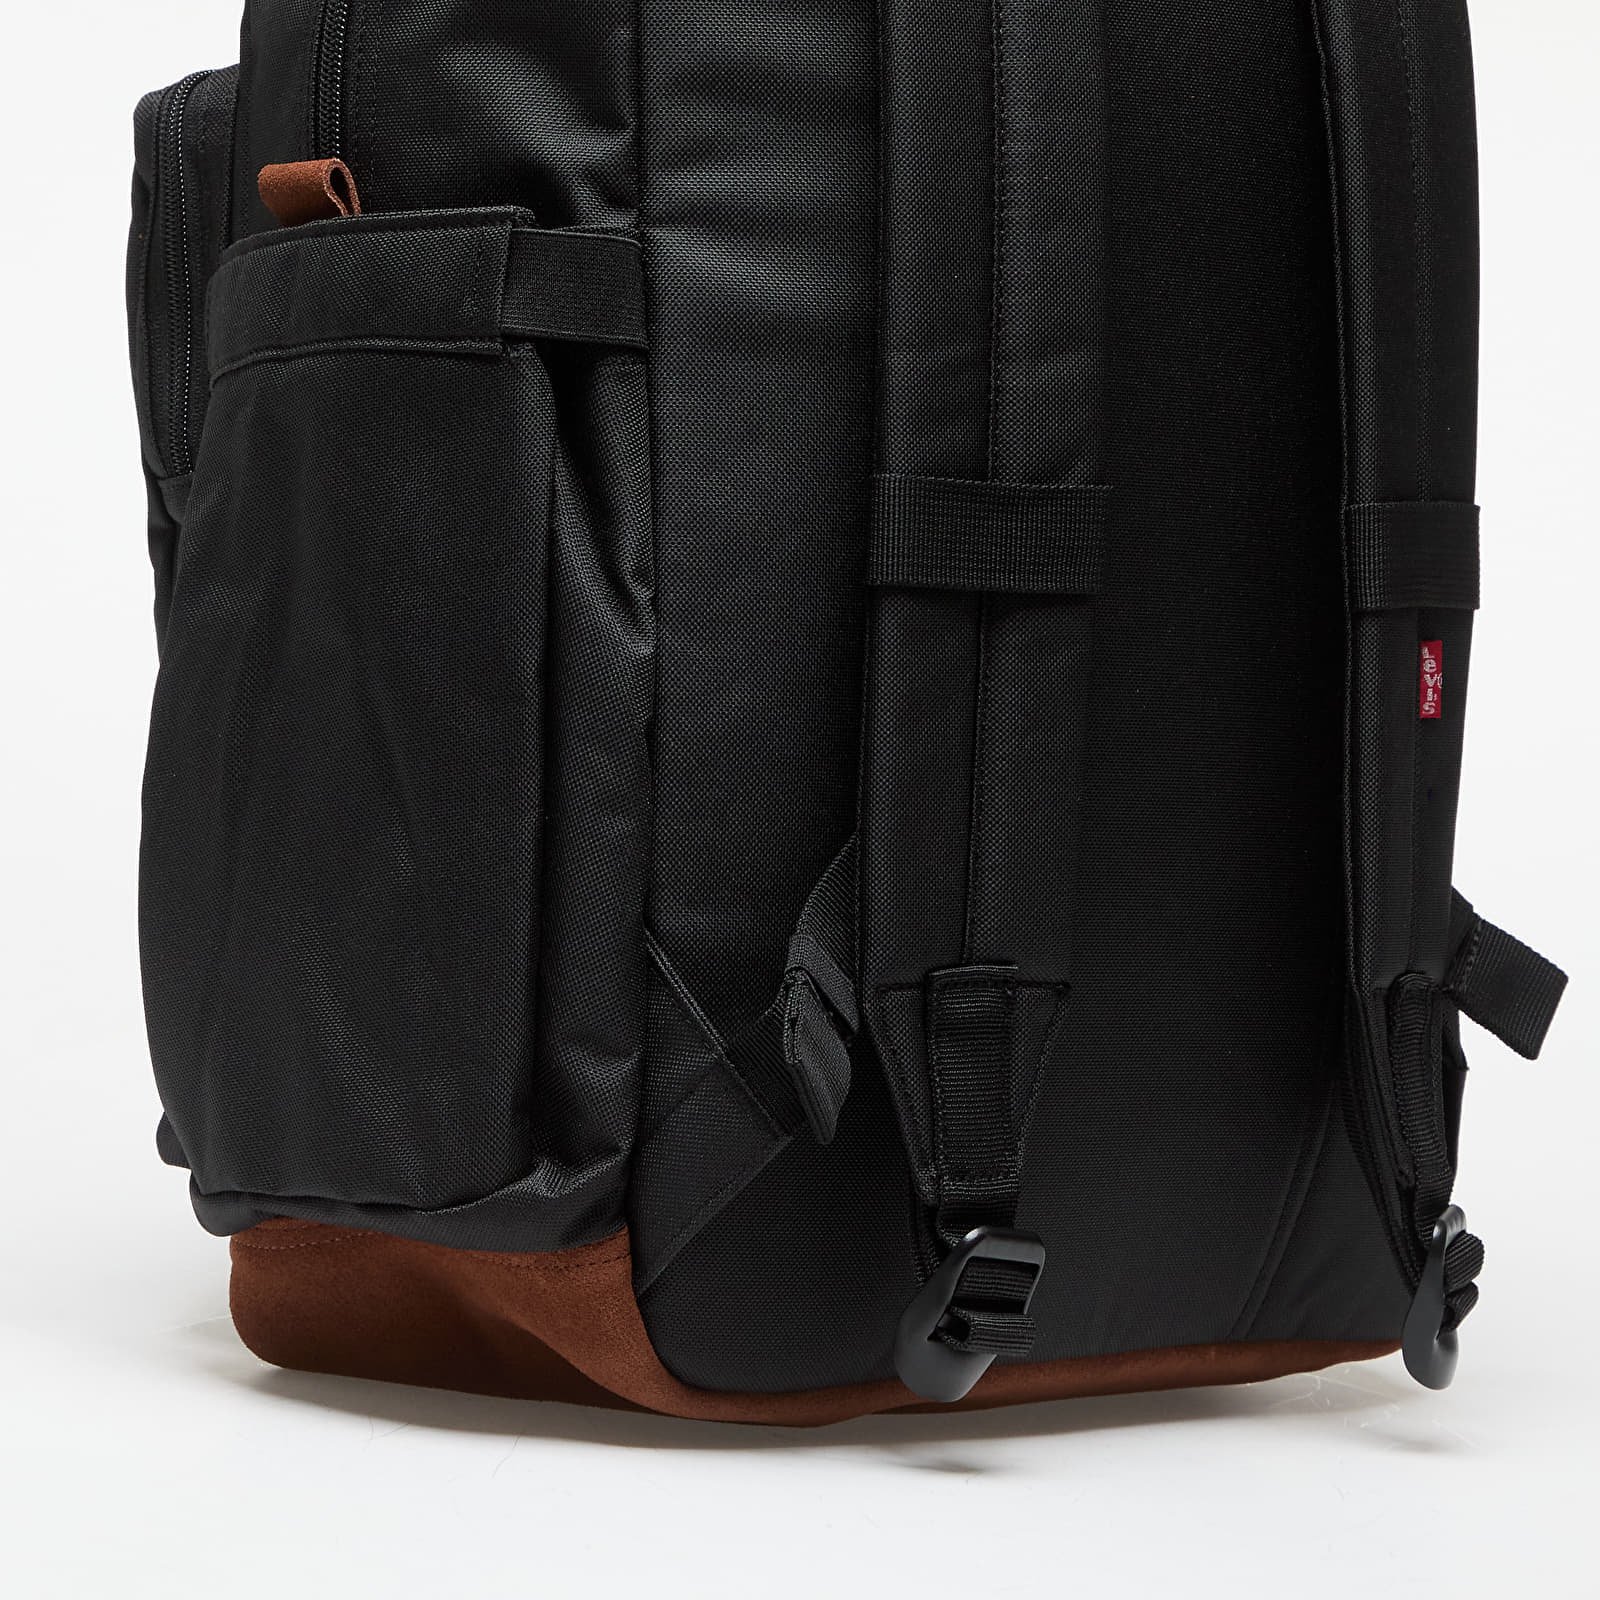 L-Pack Large Elevation Backpack Black